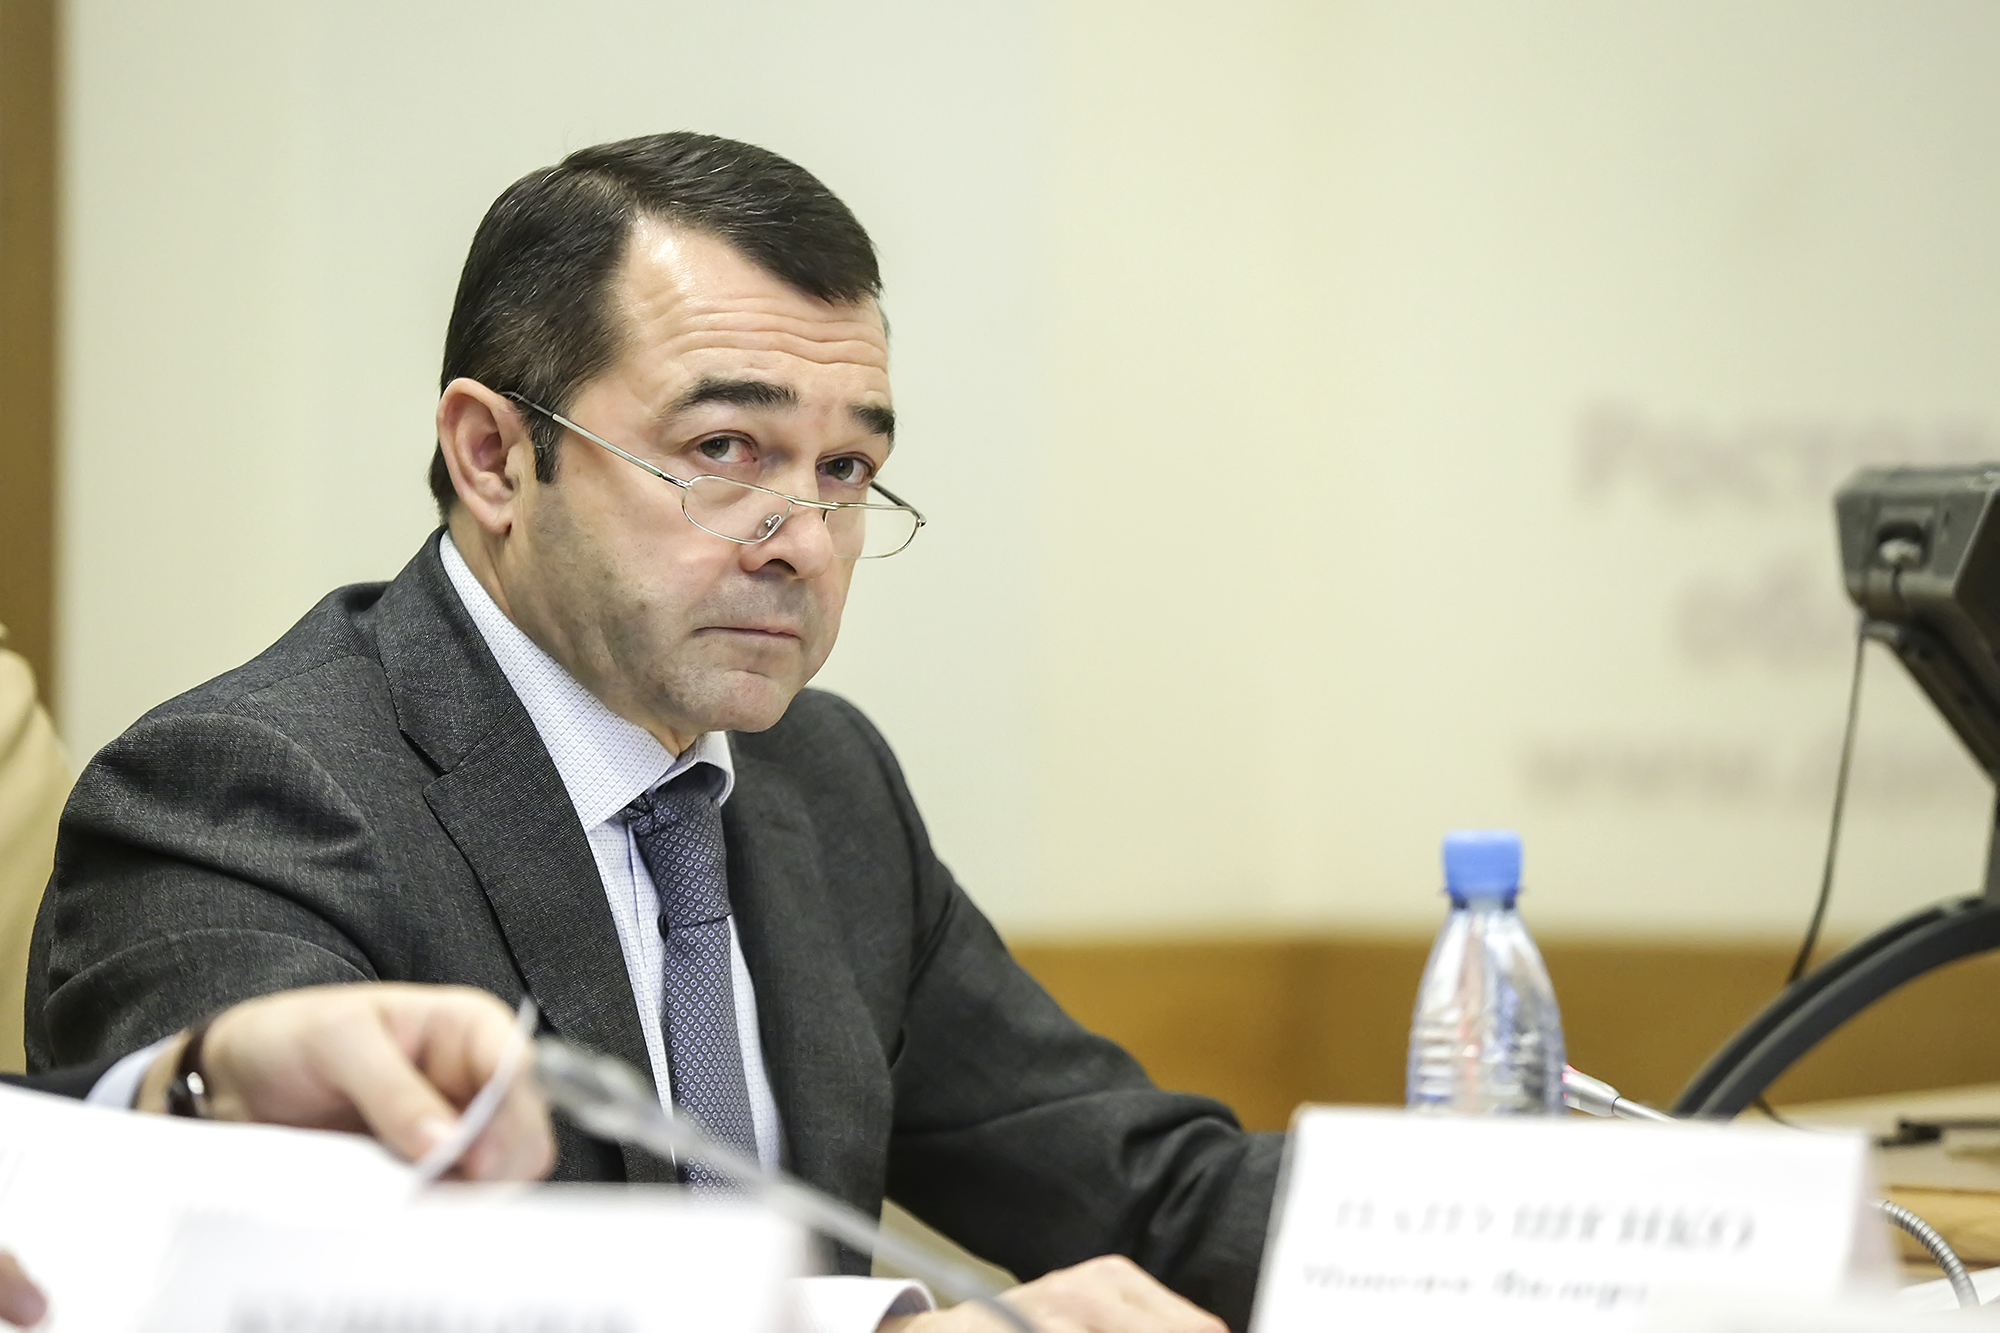 Минус чиновник: что известно об уволенном замгубернатора Молодченко